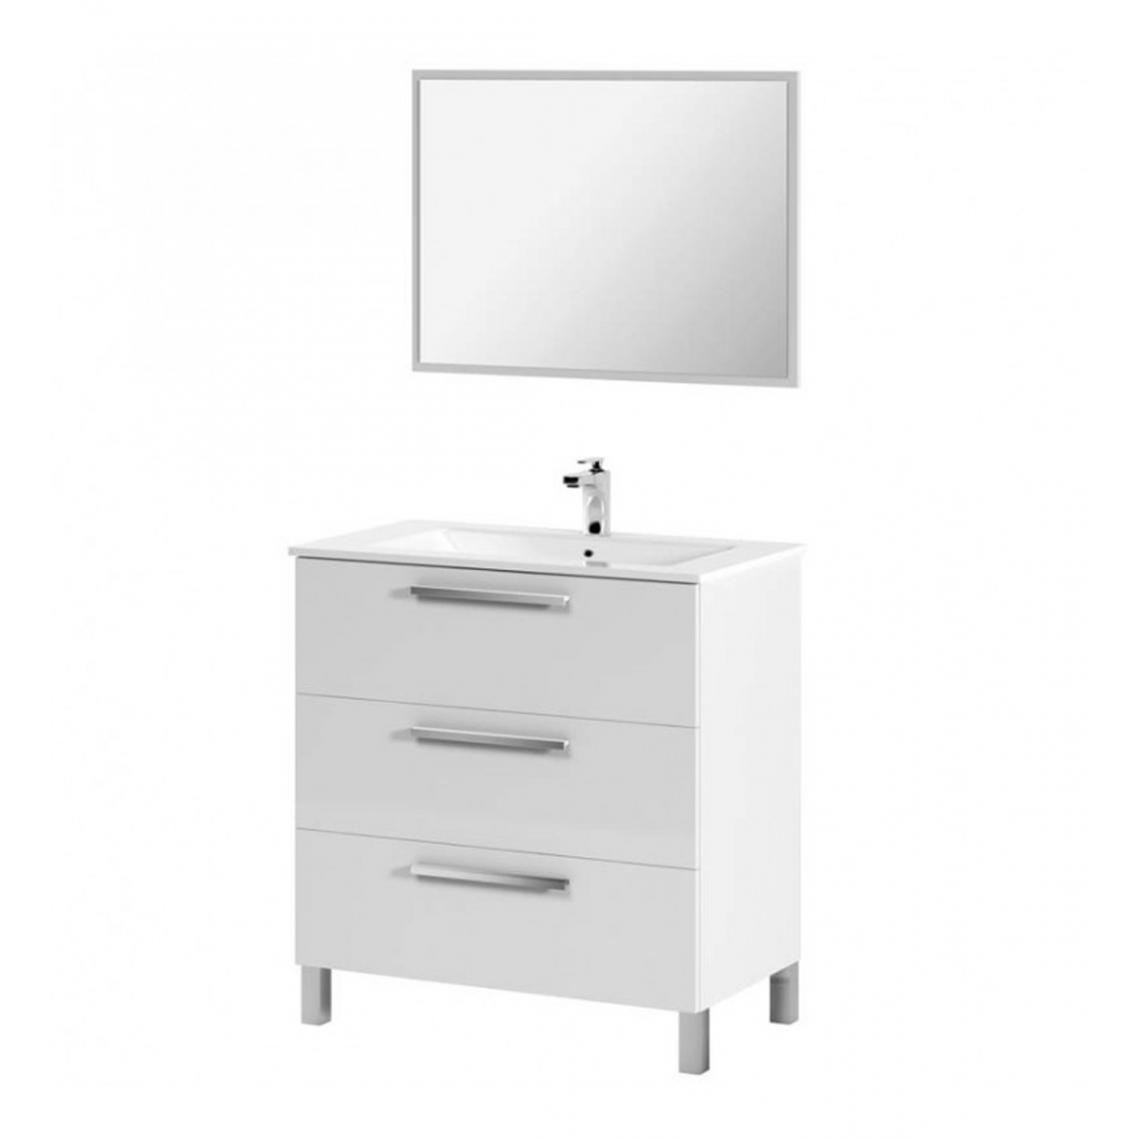 Pegane - Meuble Sous-Vasque avec 3 Portes + Miroir coloris blanc brillant - 86 x 80 x 45 cm - Vasque